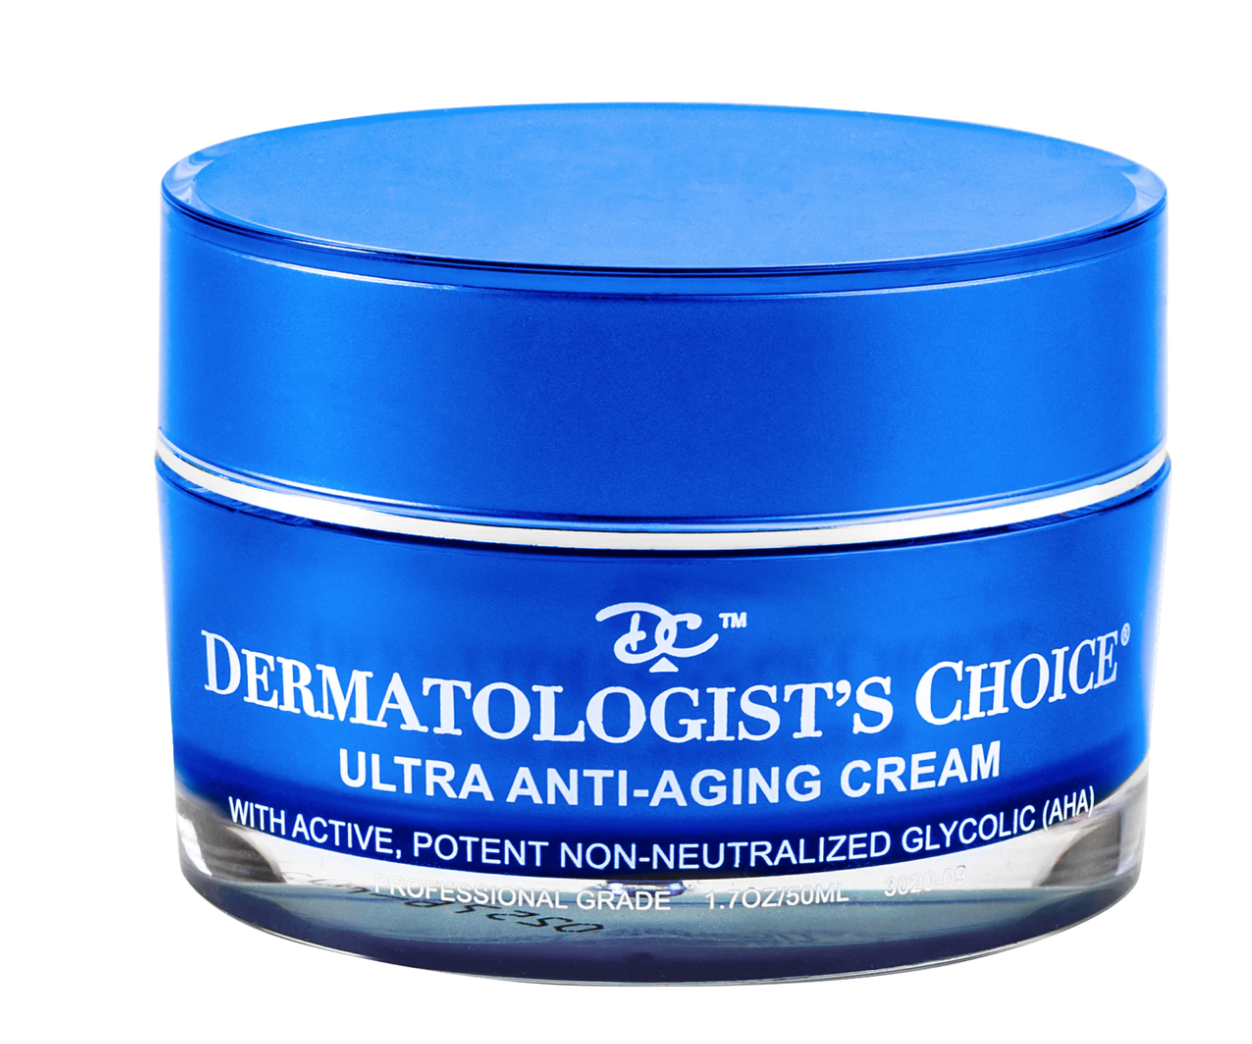 Dermatologist's Choice Ultra Anti-Aging Cream, starke Glykolsäure